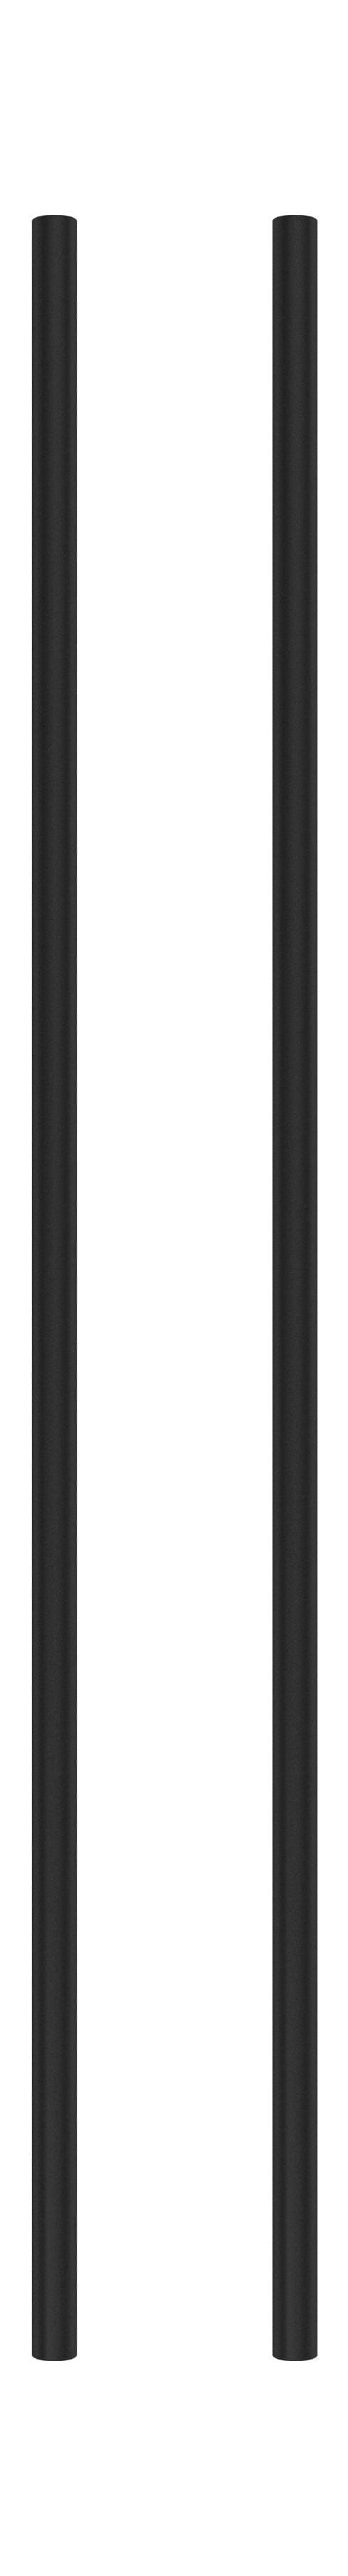 Moebe Regalsystem/Wandregalbein 85 cm schwarz, 2 Set von 2